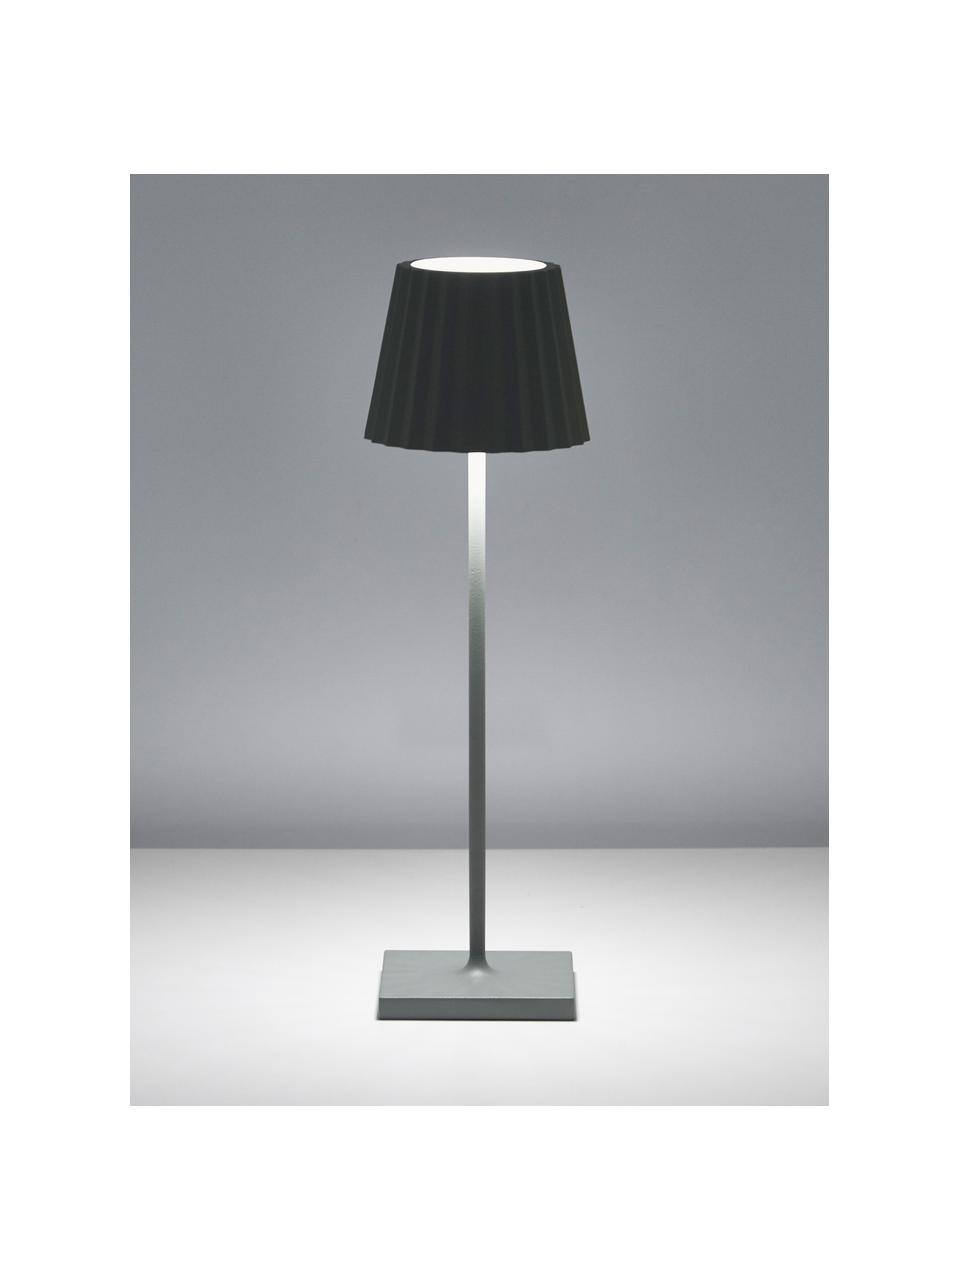 Mobile dimmbare LED-Außentischlampe Trellia, Lampenschirm: Aluminium, lackiert, Lampenfuß: Aluminium, lackiert, Salbeigrün, Ø 12 x H 38 cm